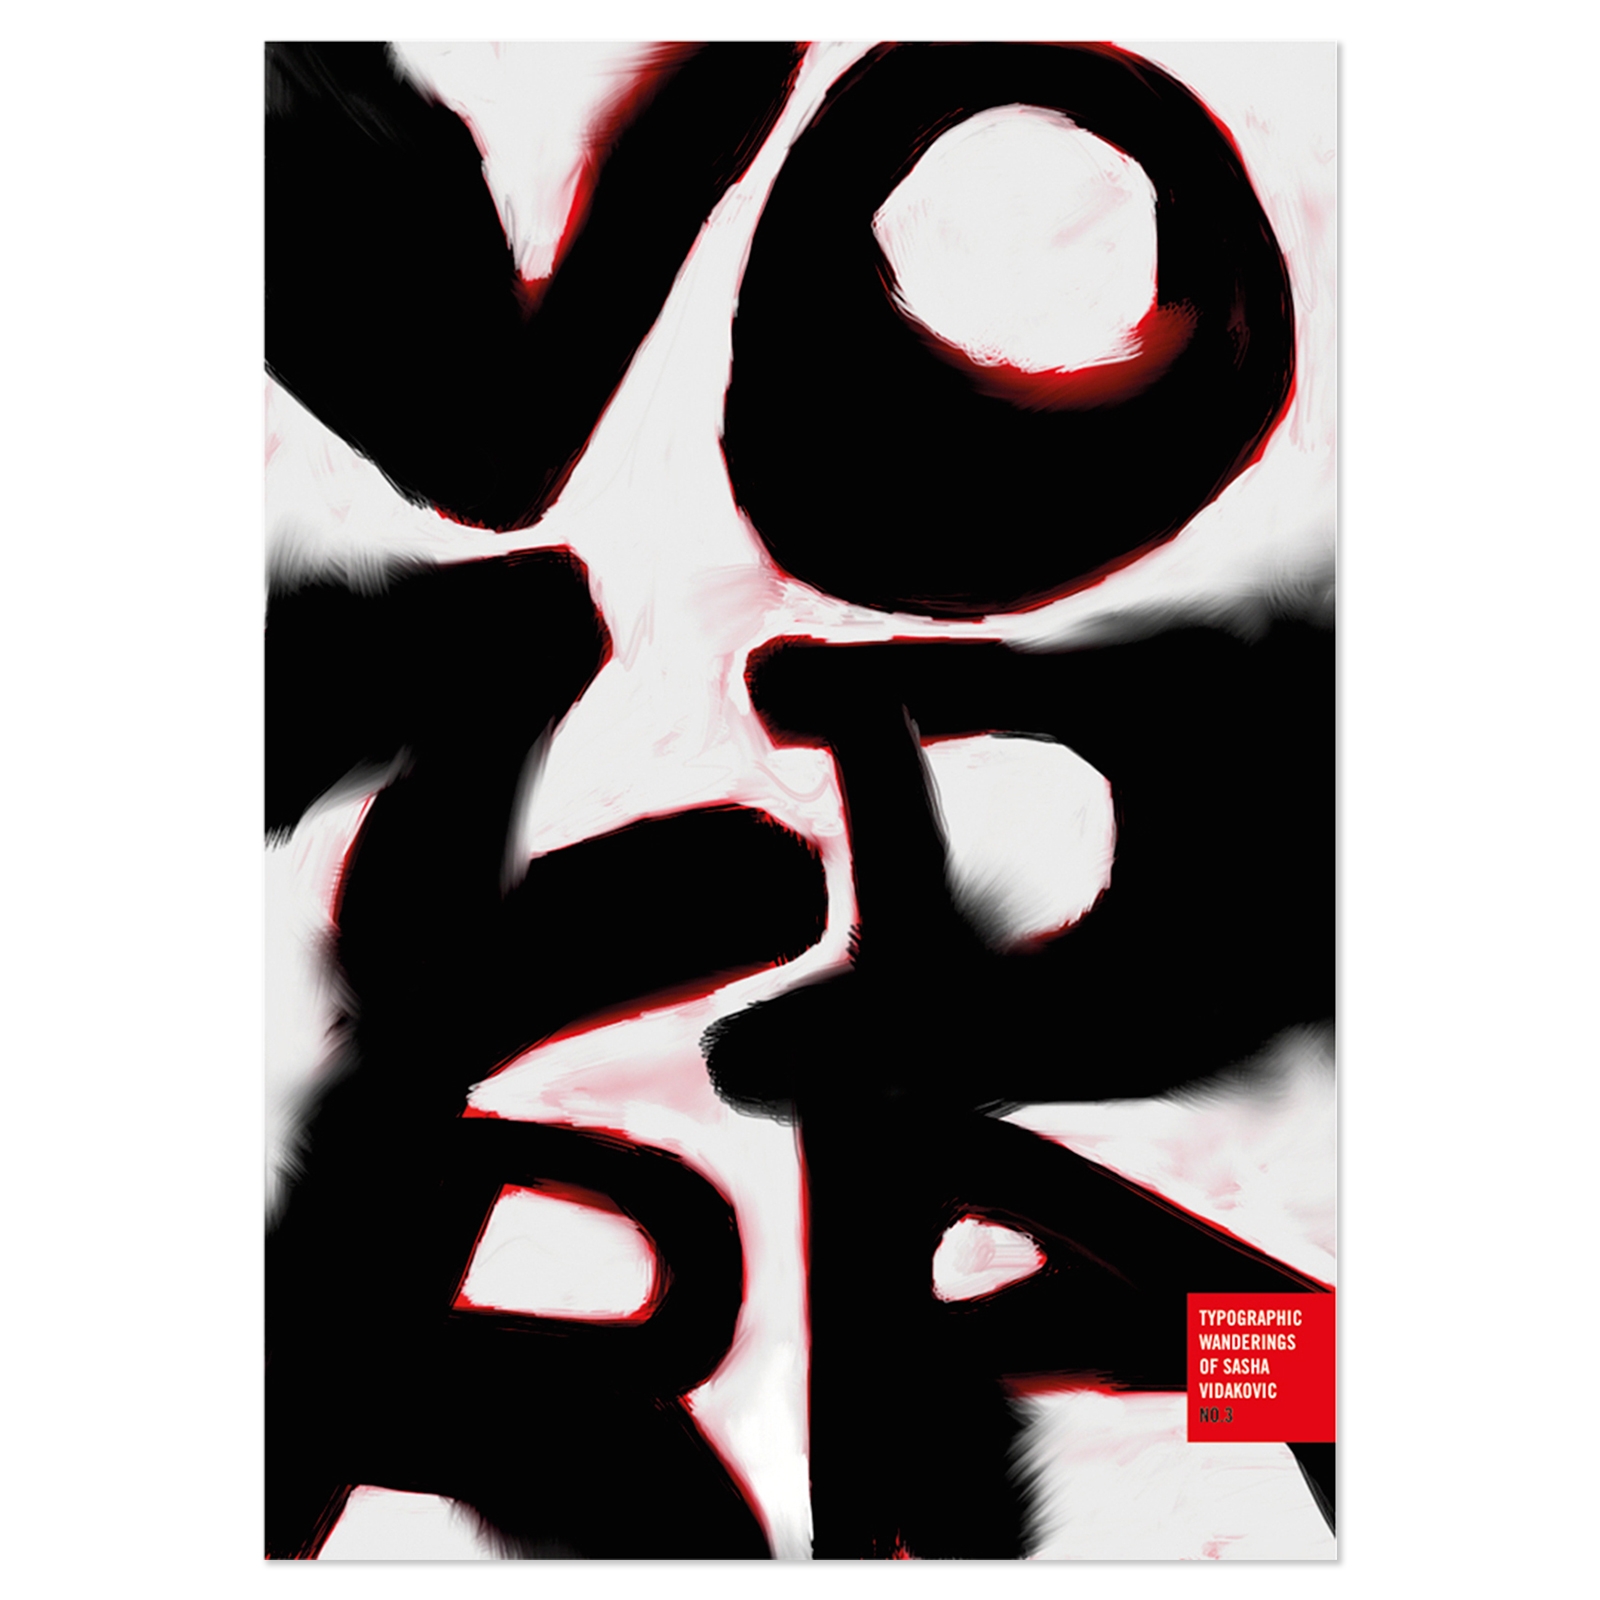 SVIDesign - Poster Series: Typographic Wanderings